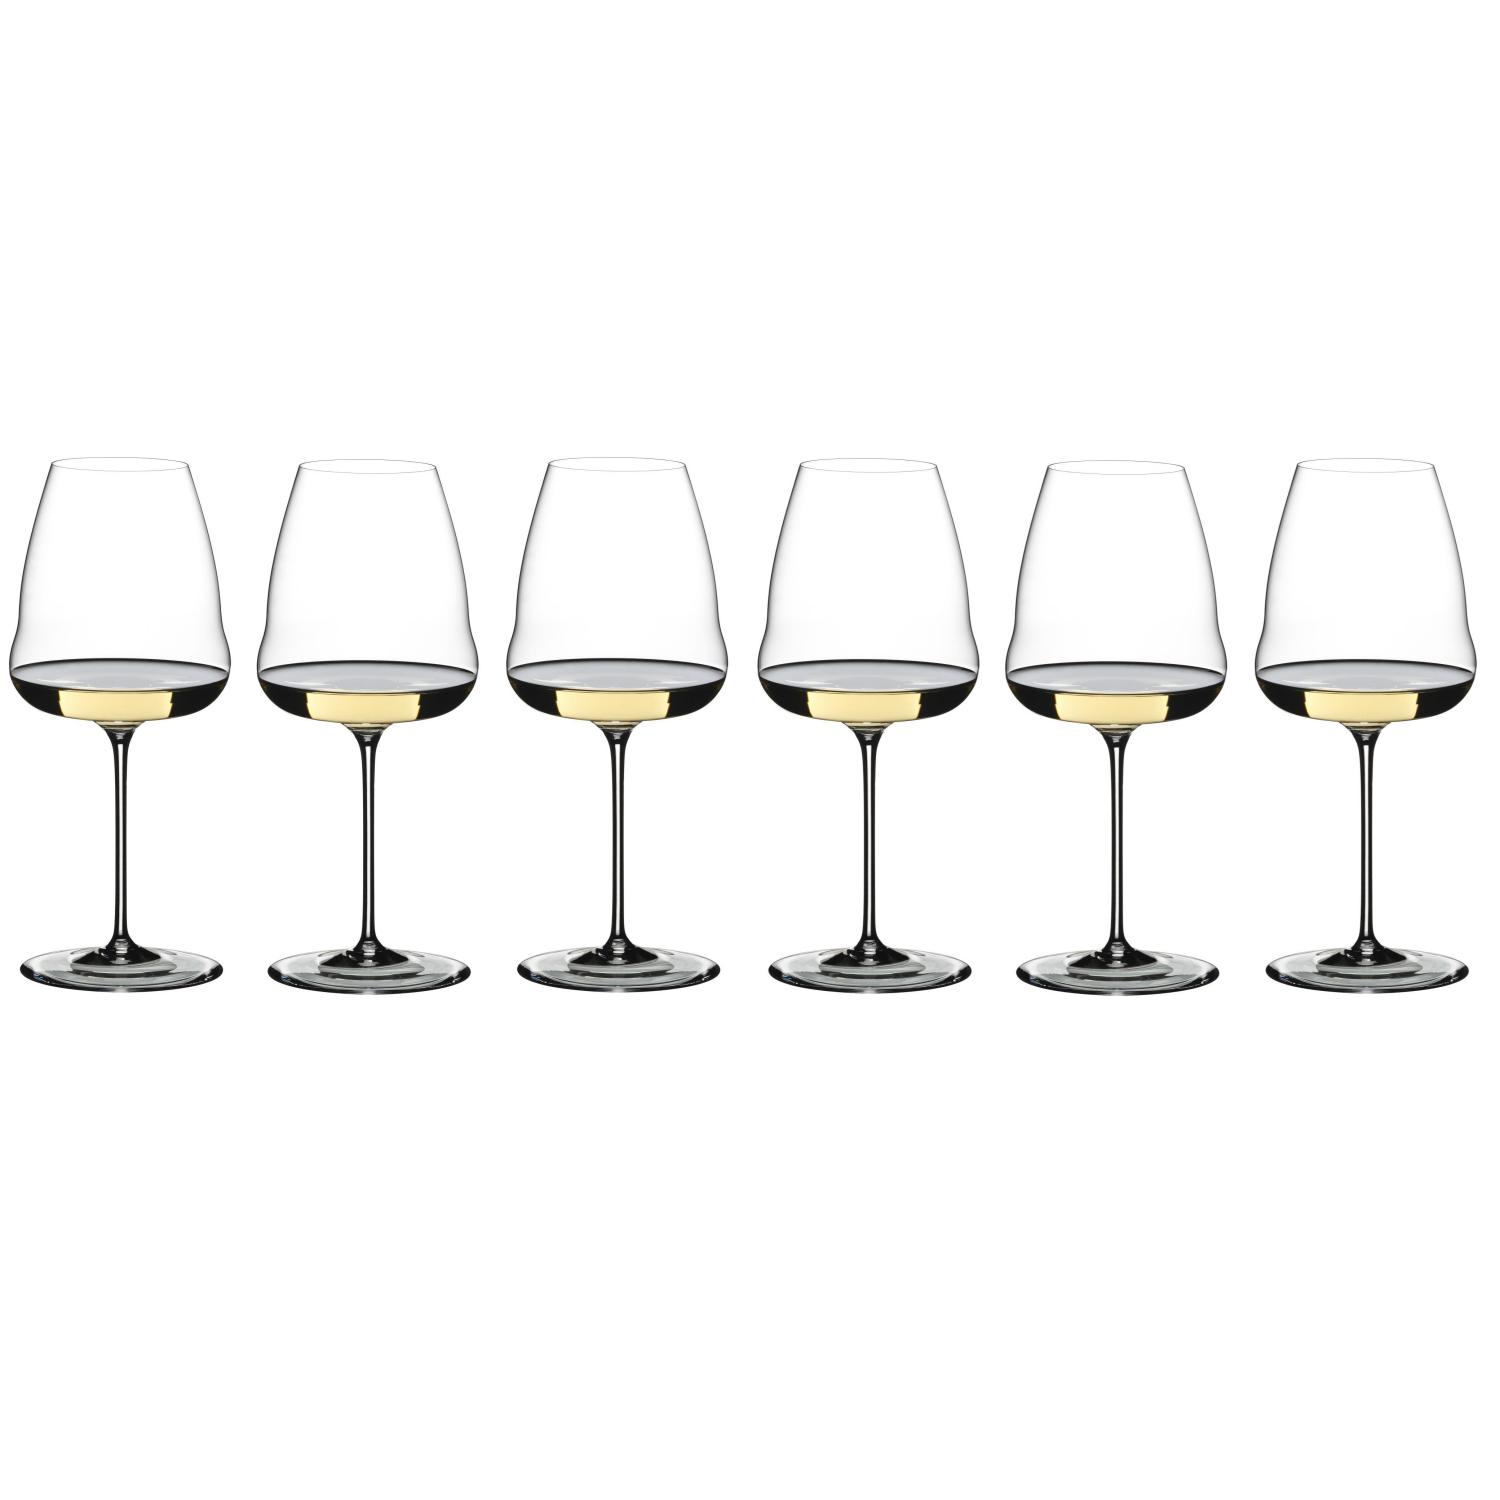 6 бокалов для белого вина RIEDEL Winewings Party Set Sauvignon Blanc 742 мл